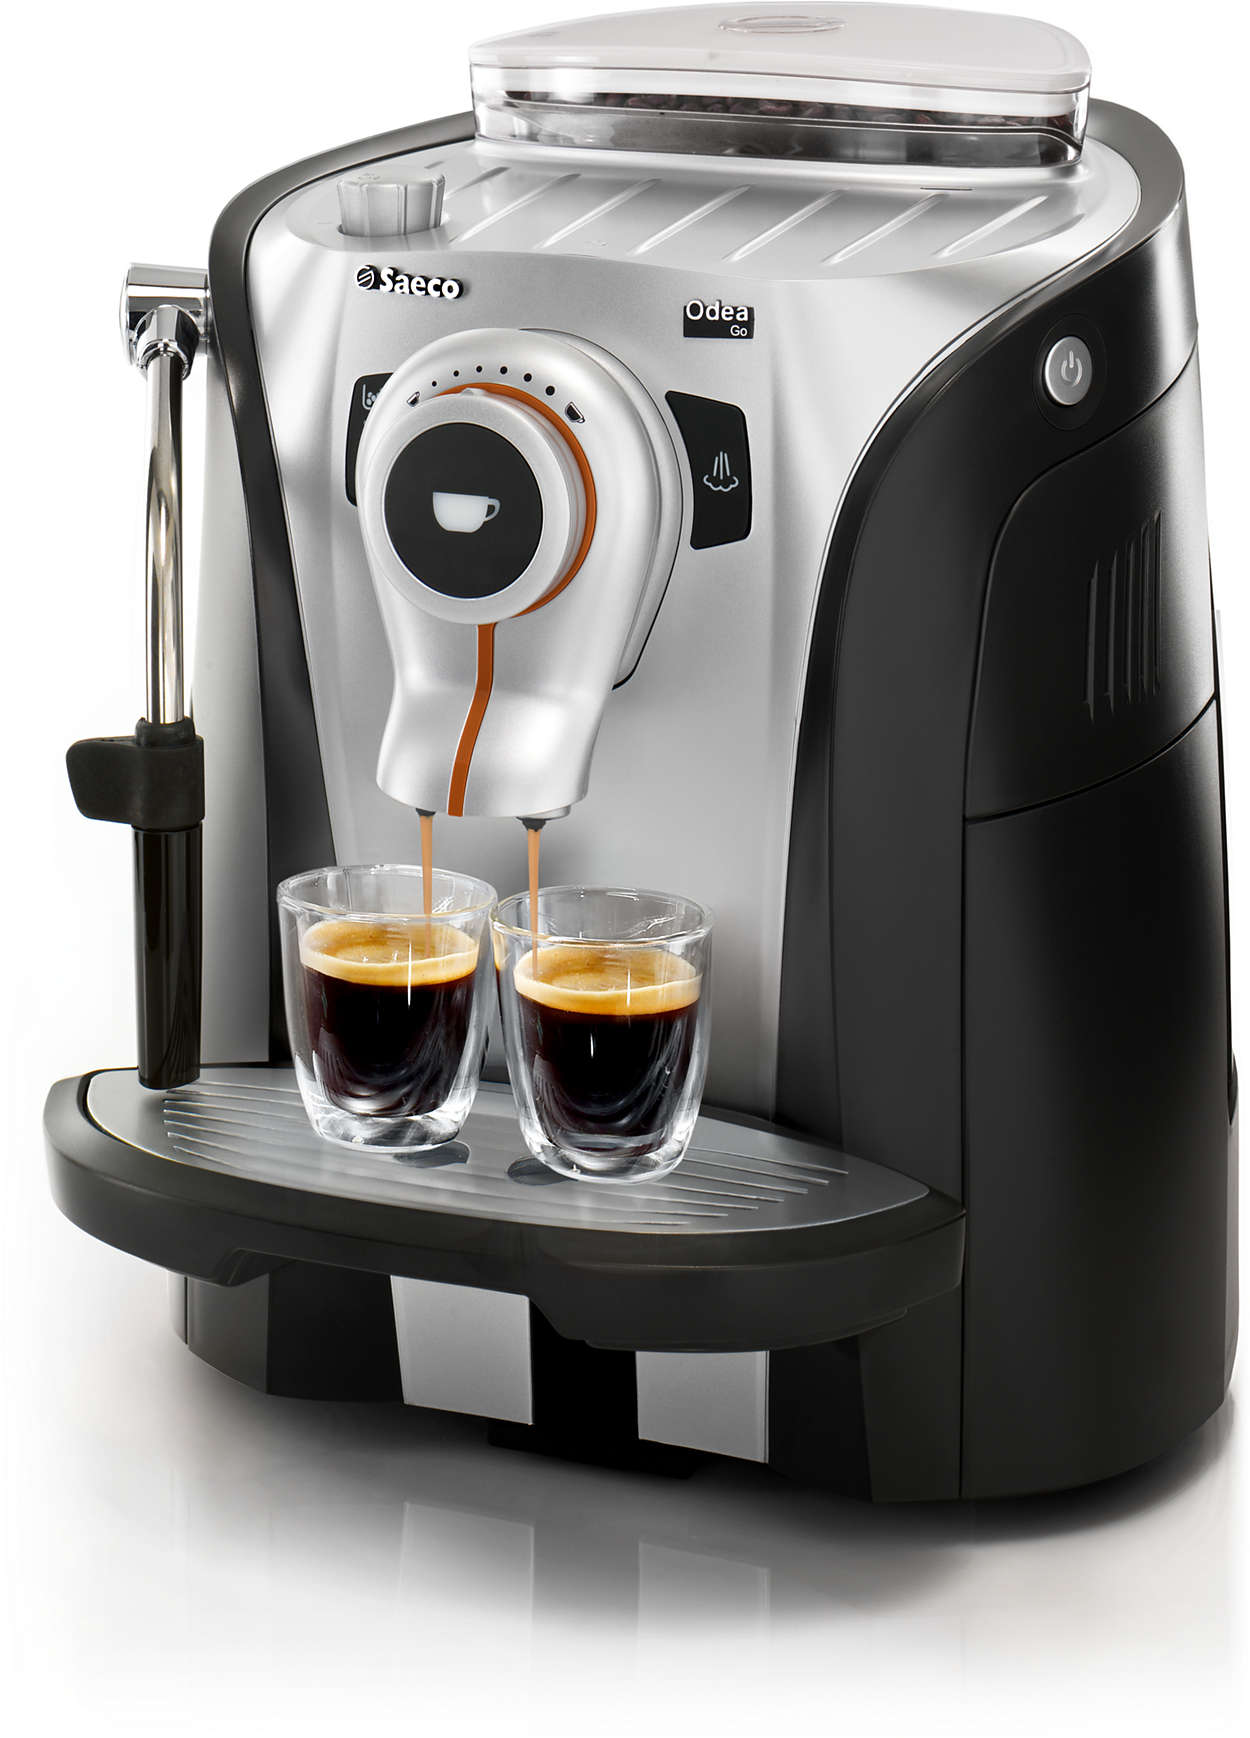 Espressomachine met een trendy en functioneel ontwerp